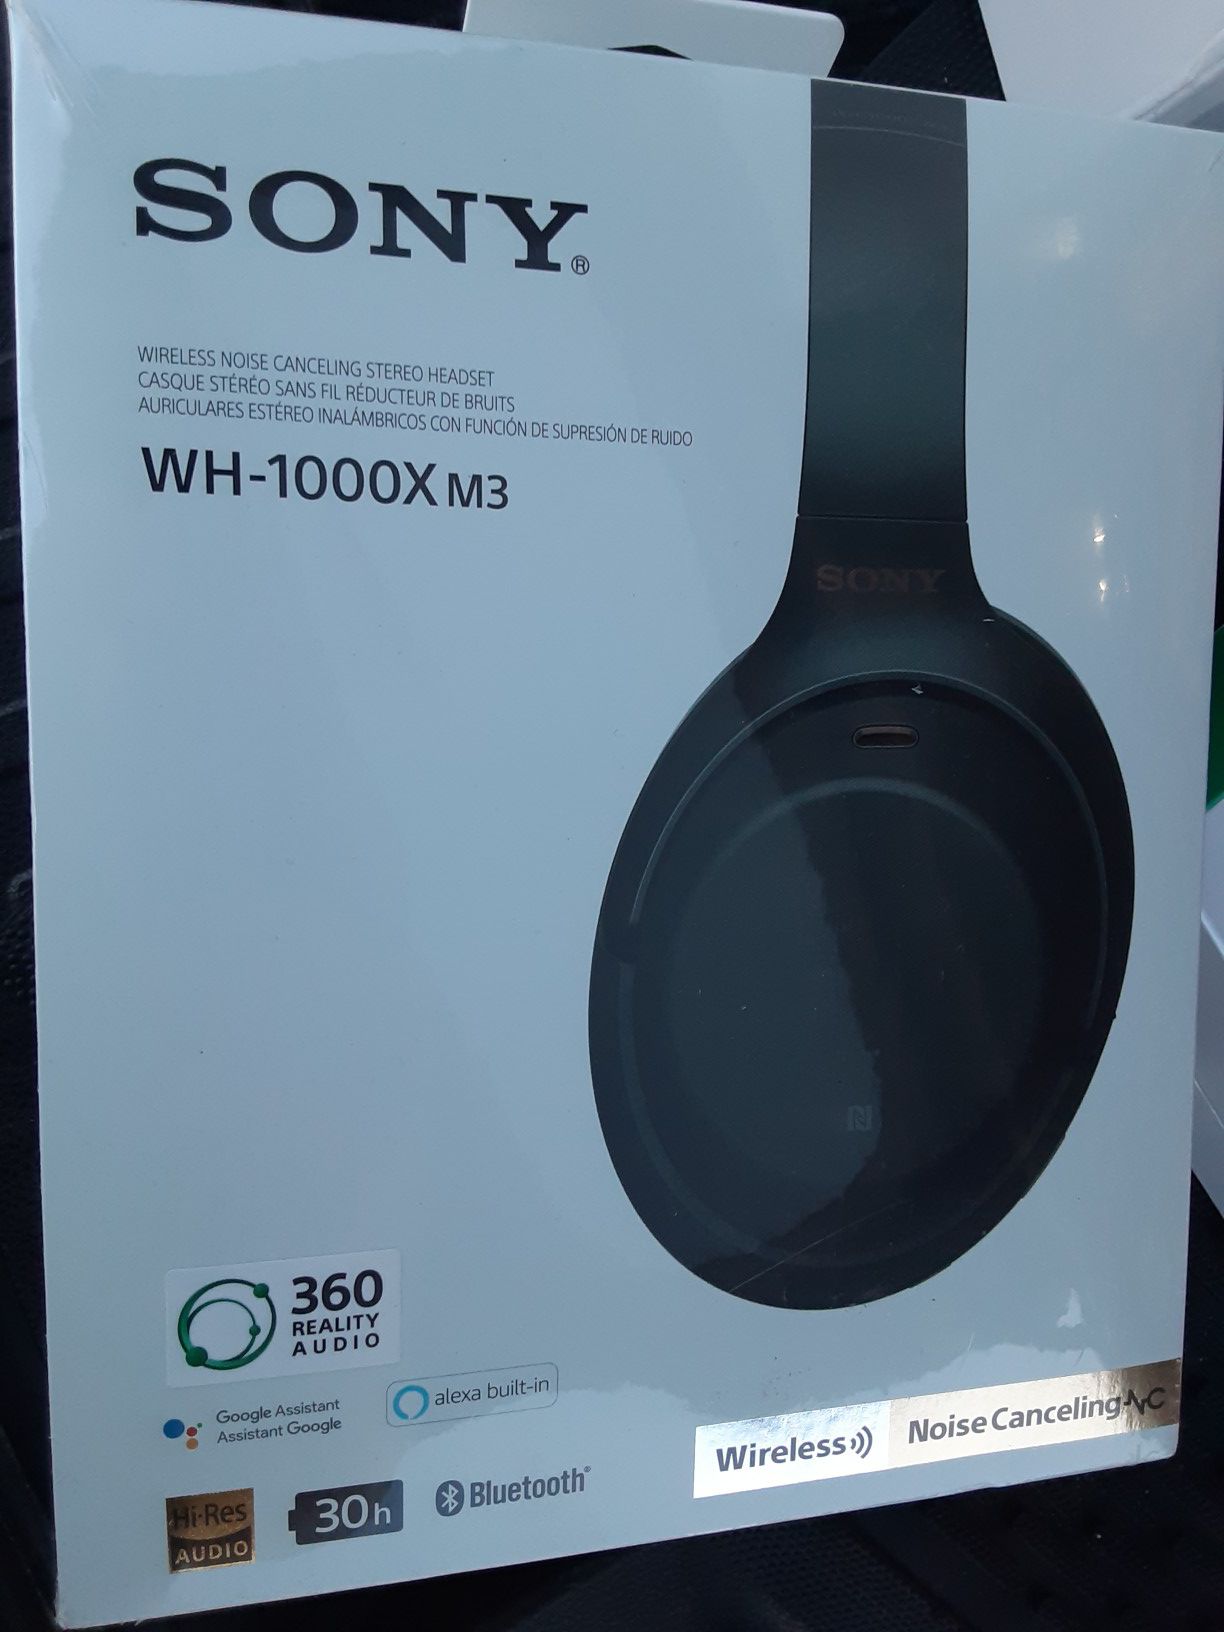 Sony pro wireless headphones